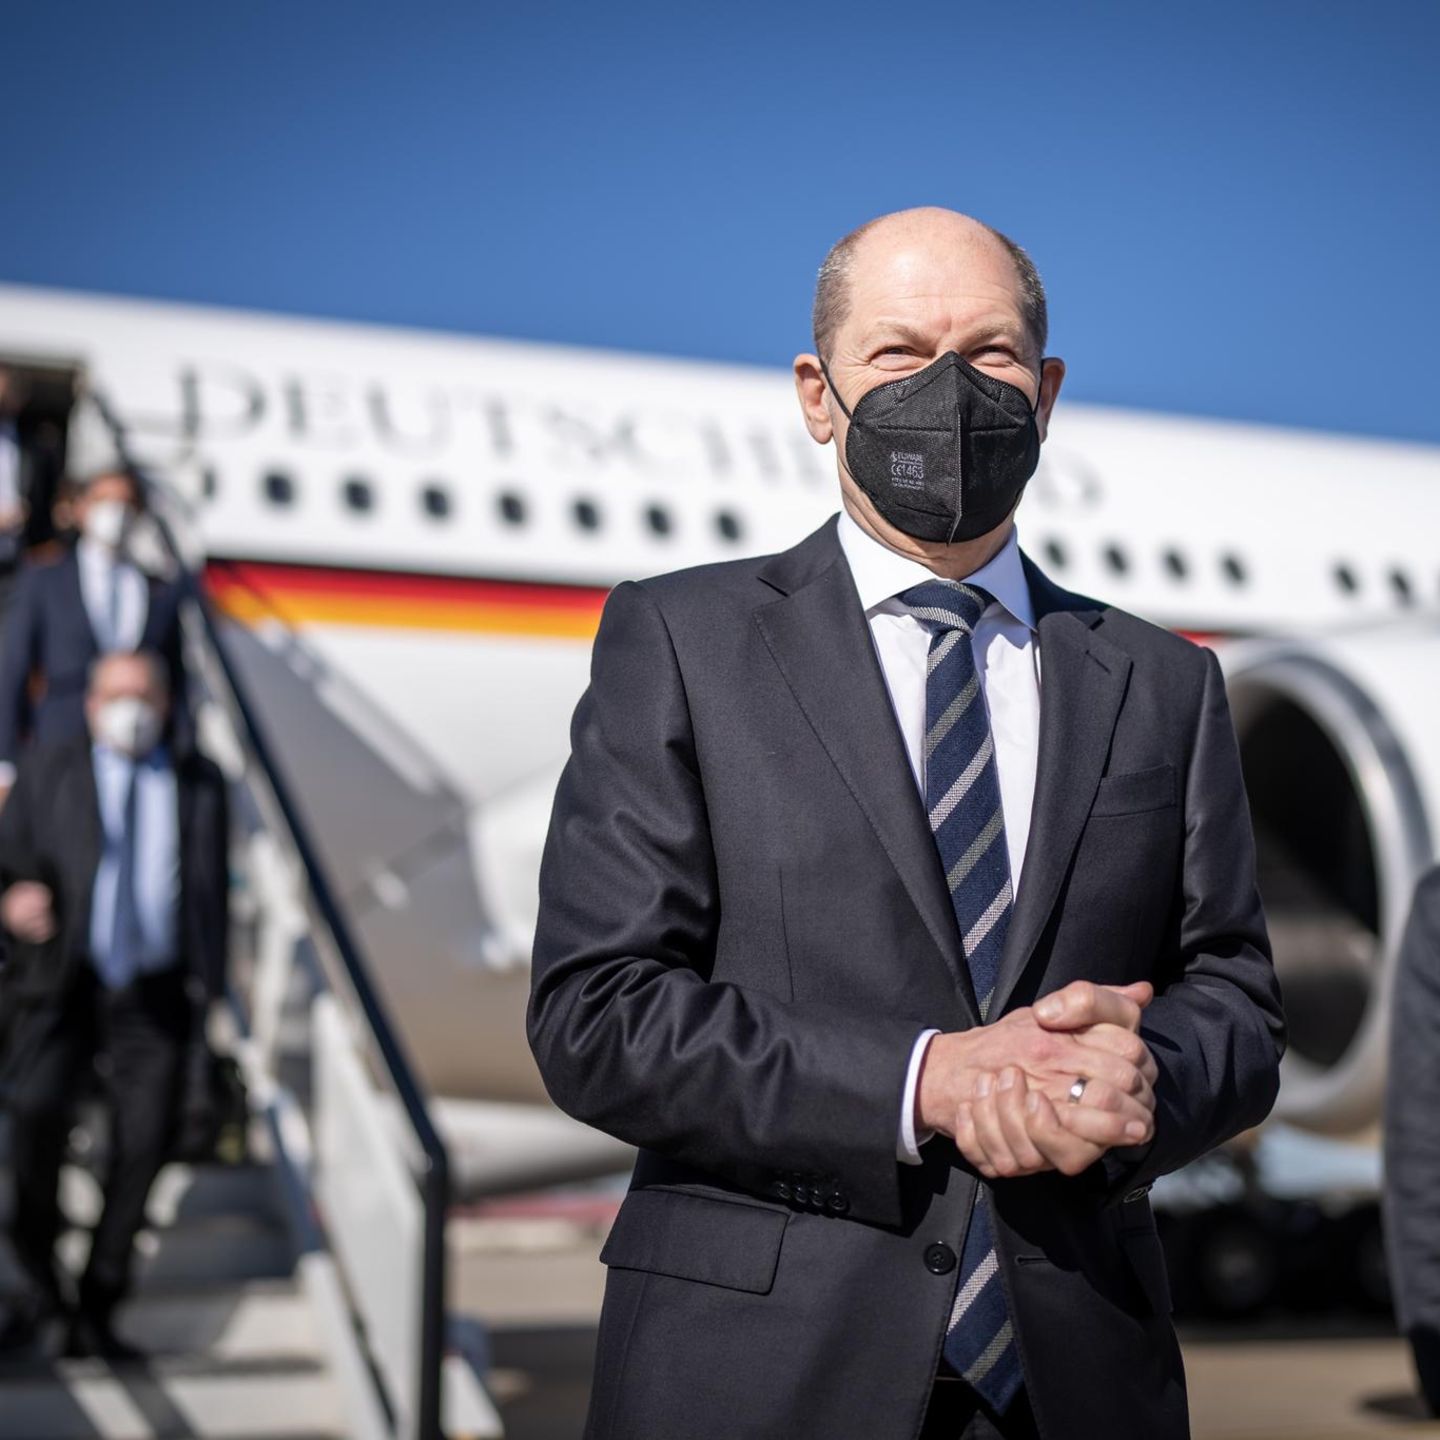 Nach Bildern von Scholz und Habeck: Kritik an Maskenpflicht im